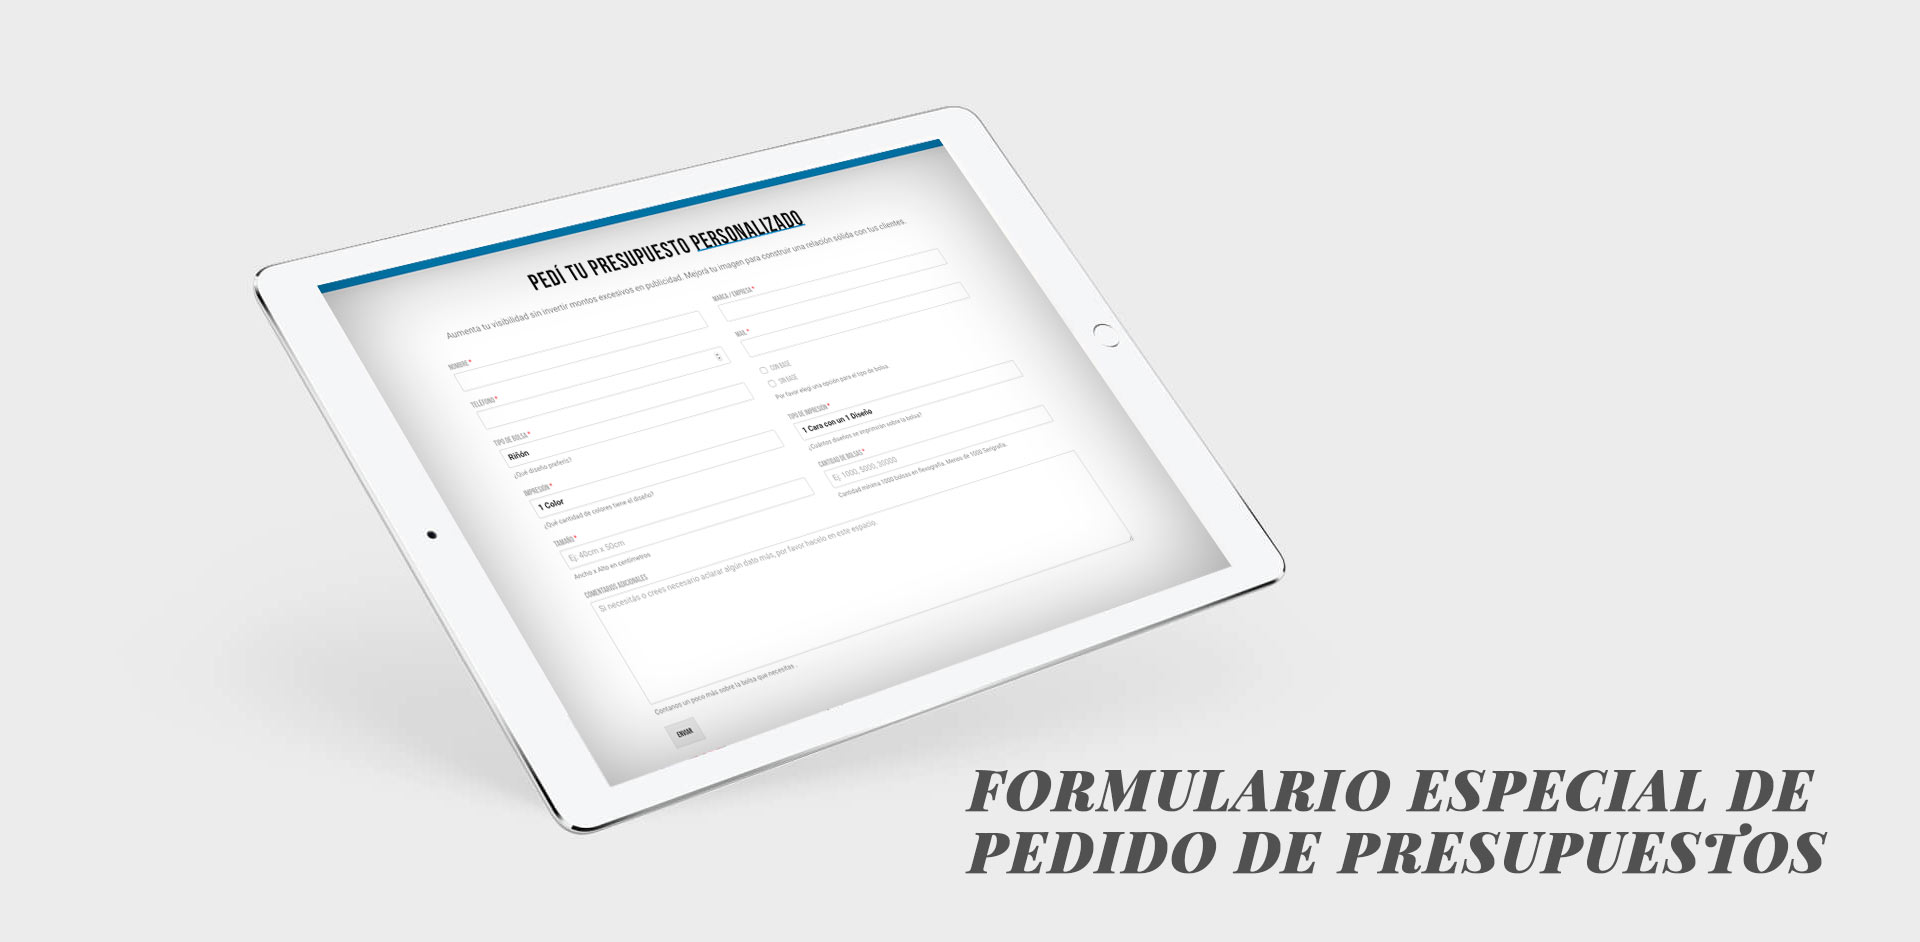 Diseño y desarrollo de una web institucional con ecommerce para 3R Bolsas.